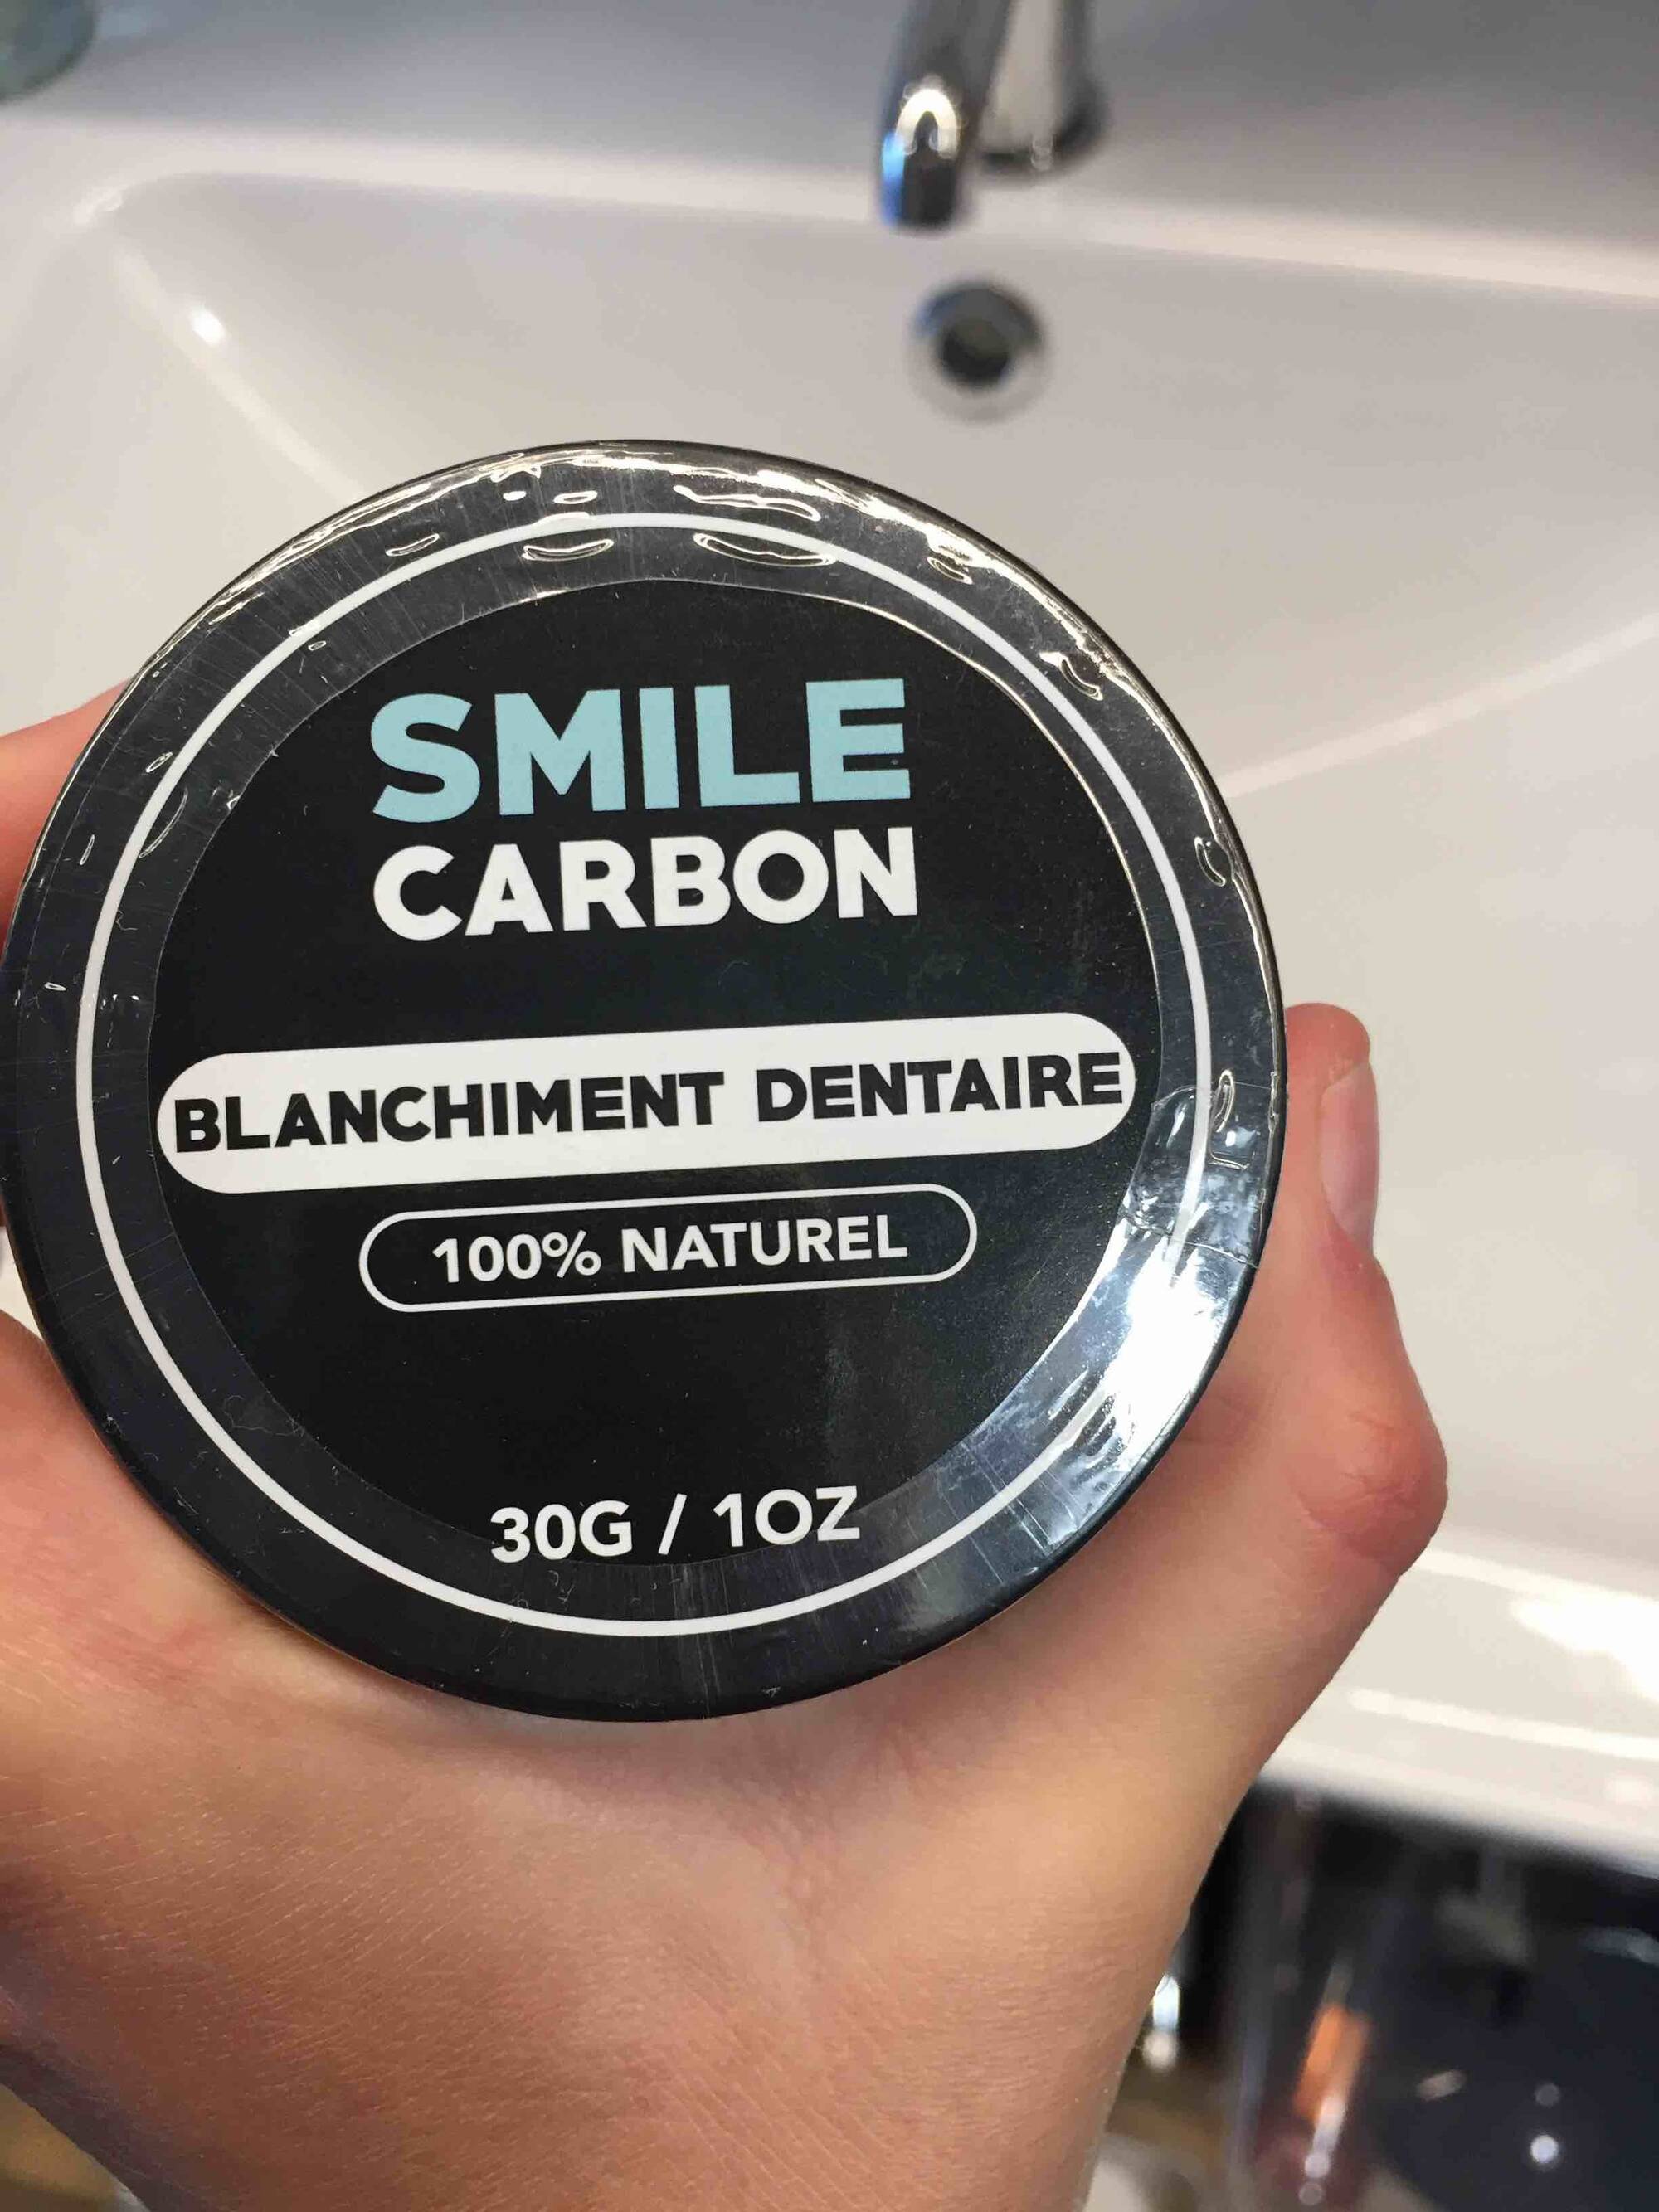 SMILE CARBON - Blanchiment dentaire 100% naturel